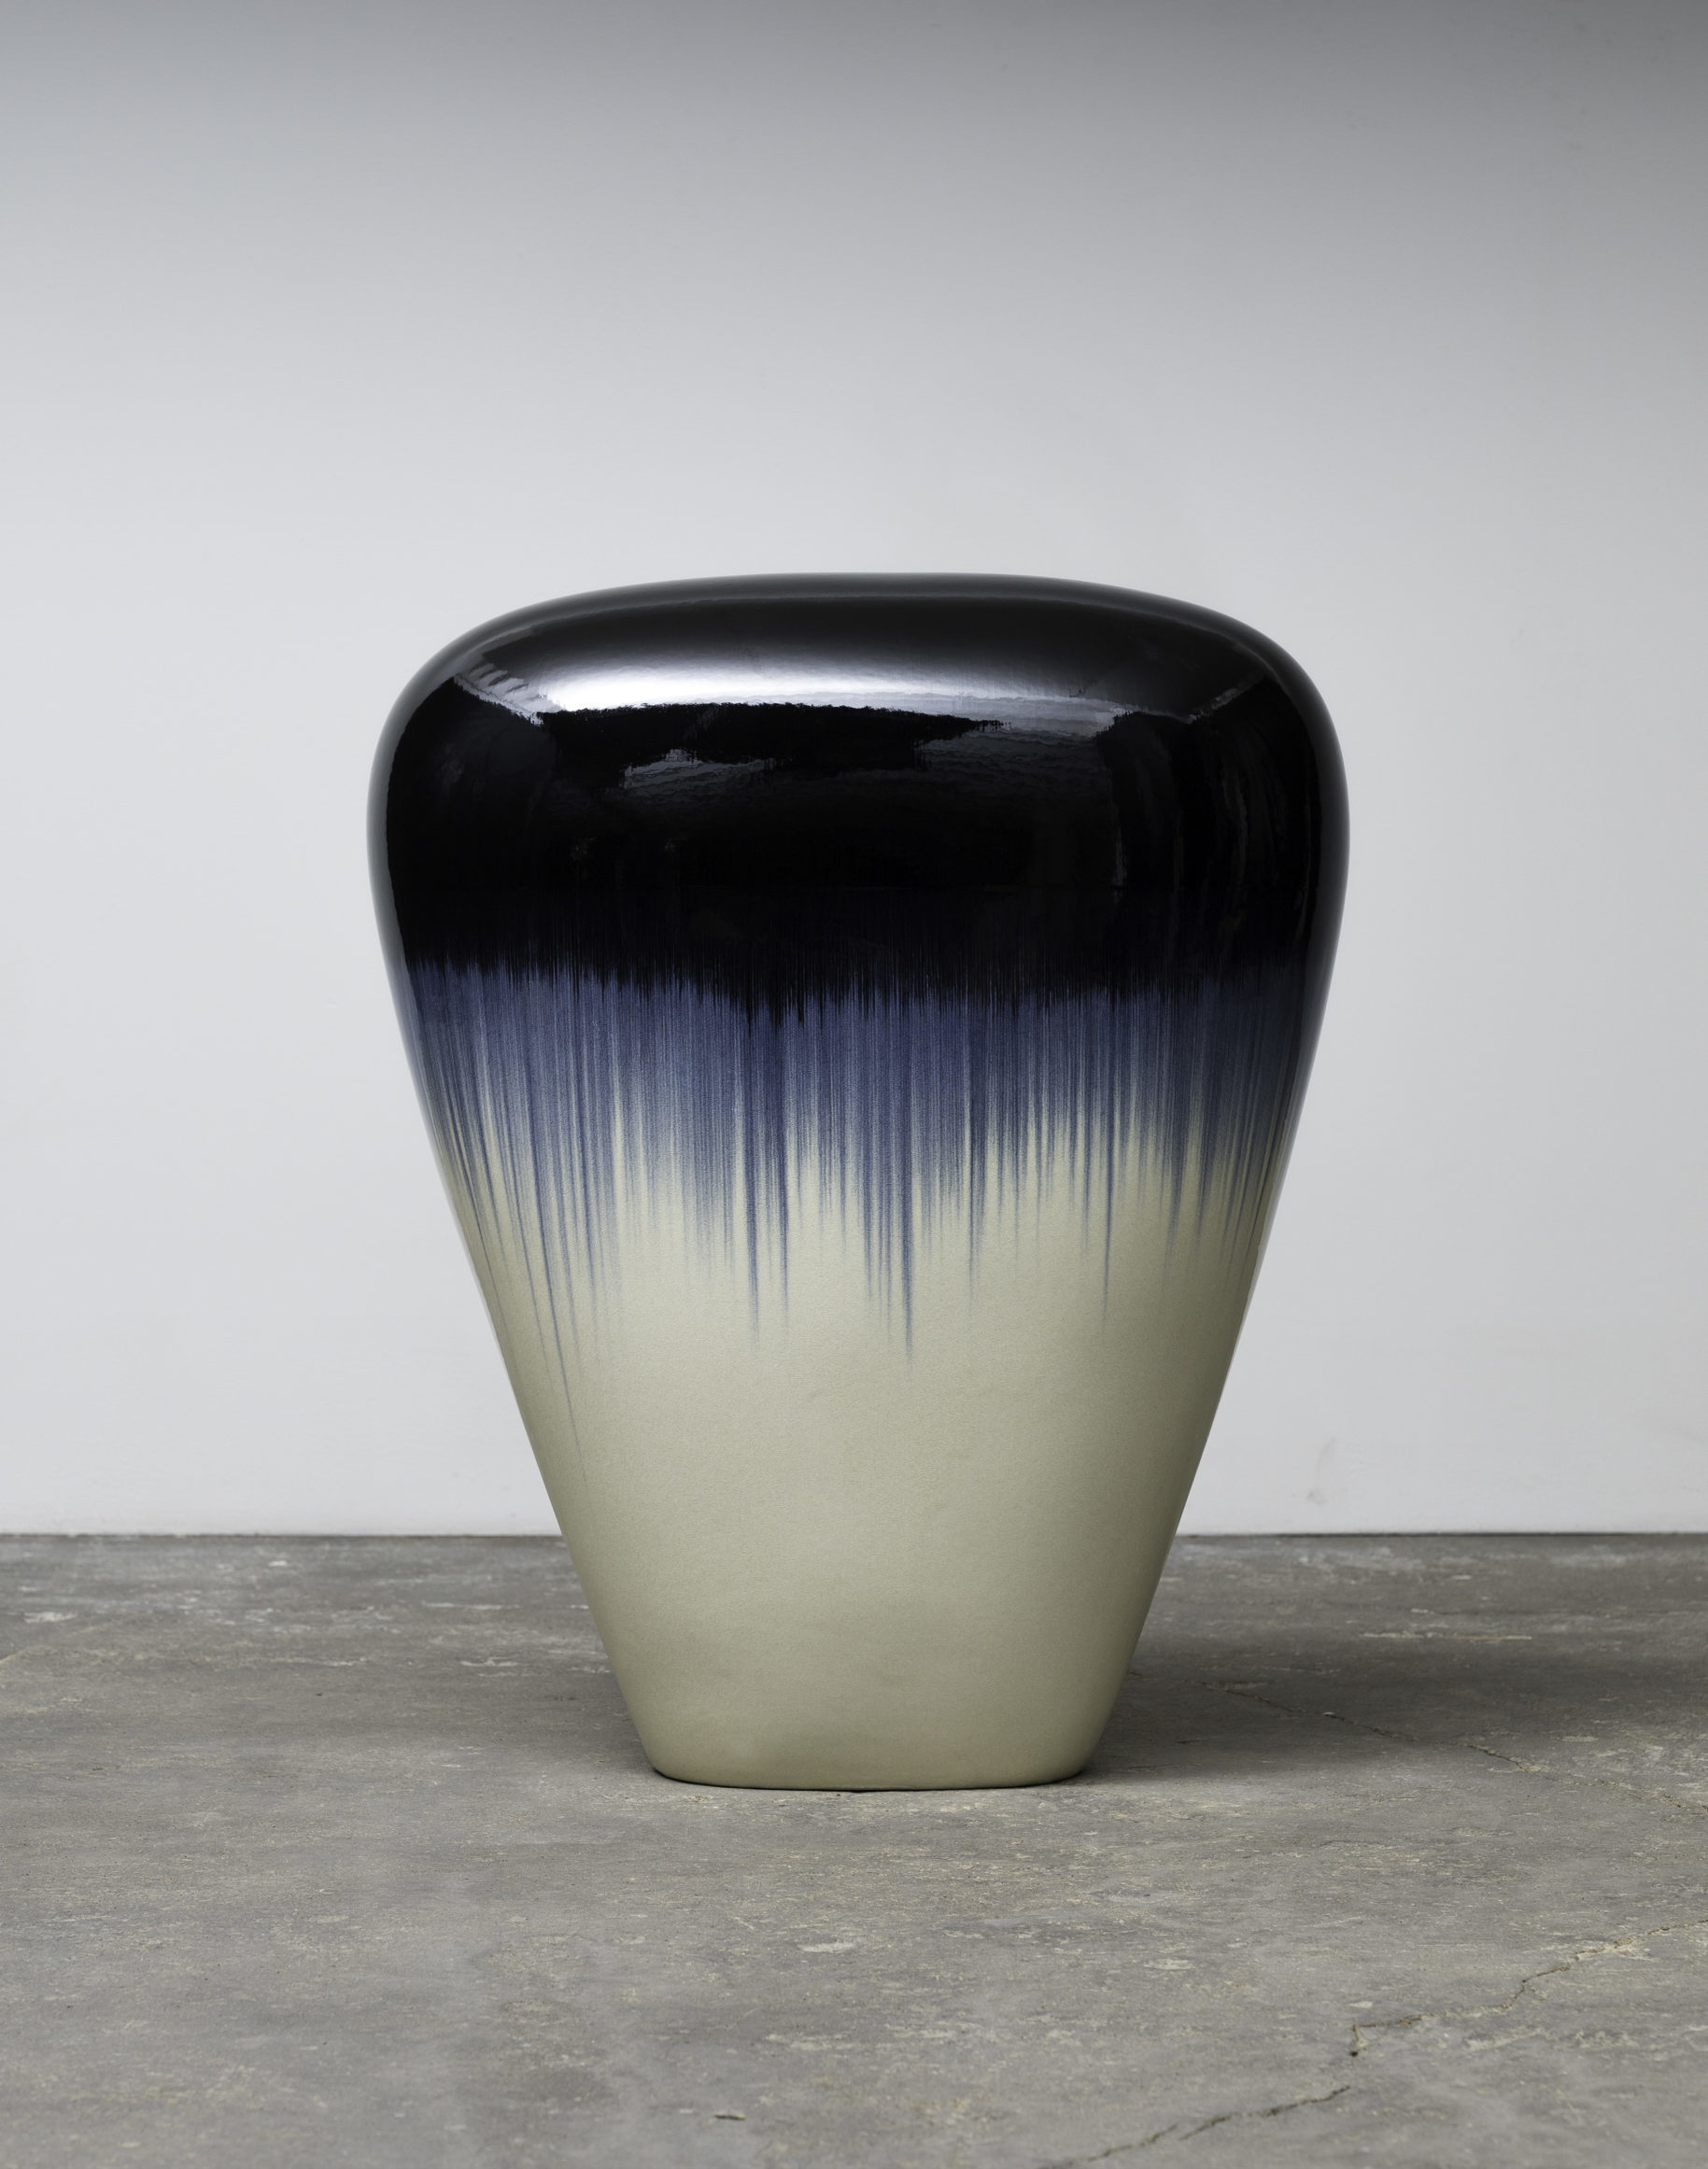 

											Jun Kaneko</b>

											<em>
												</em> 

											<h4>
												Santa Fe: September 9 – November 26, 2022											</h4>

		                																																													<i>Untitled,</i>  
																																								2019, 
																																								glazed ceramics, 
																																								37 x 30 1/4 x 15 1/2 inches 
																								
		                				